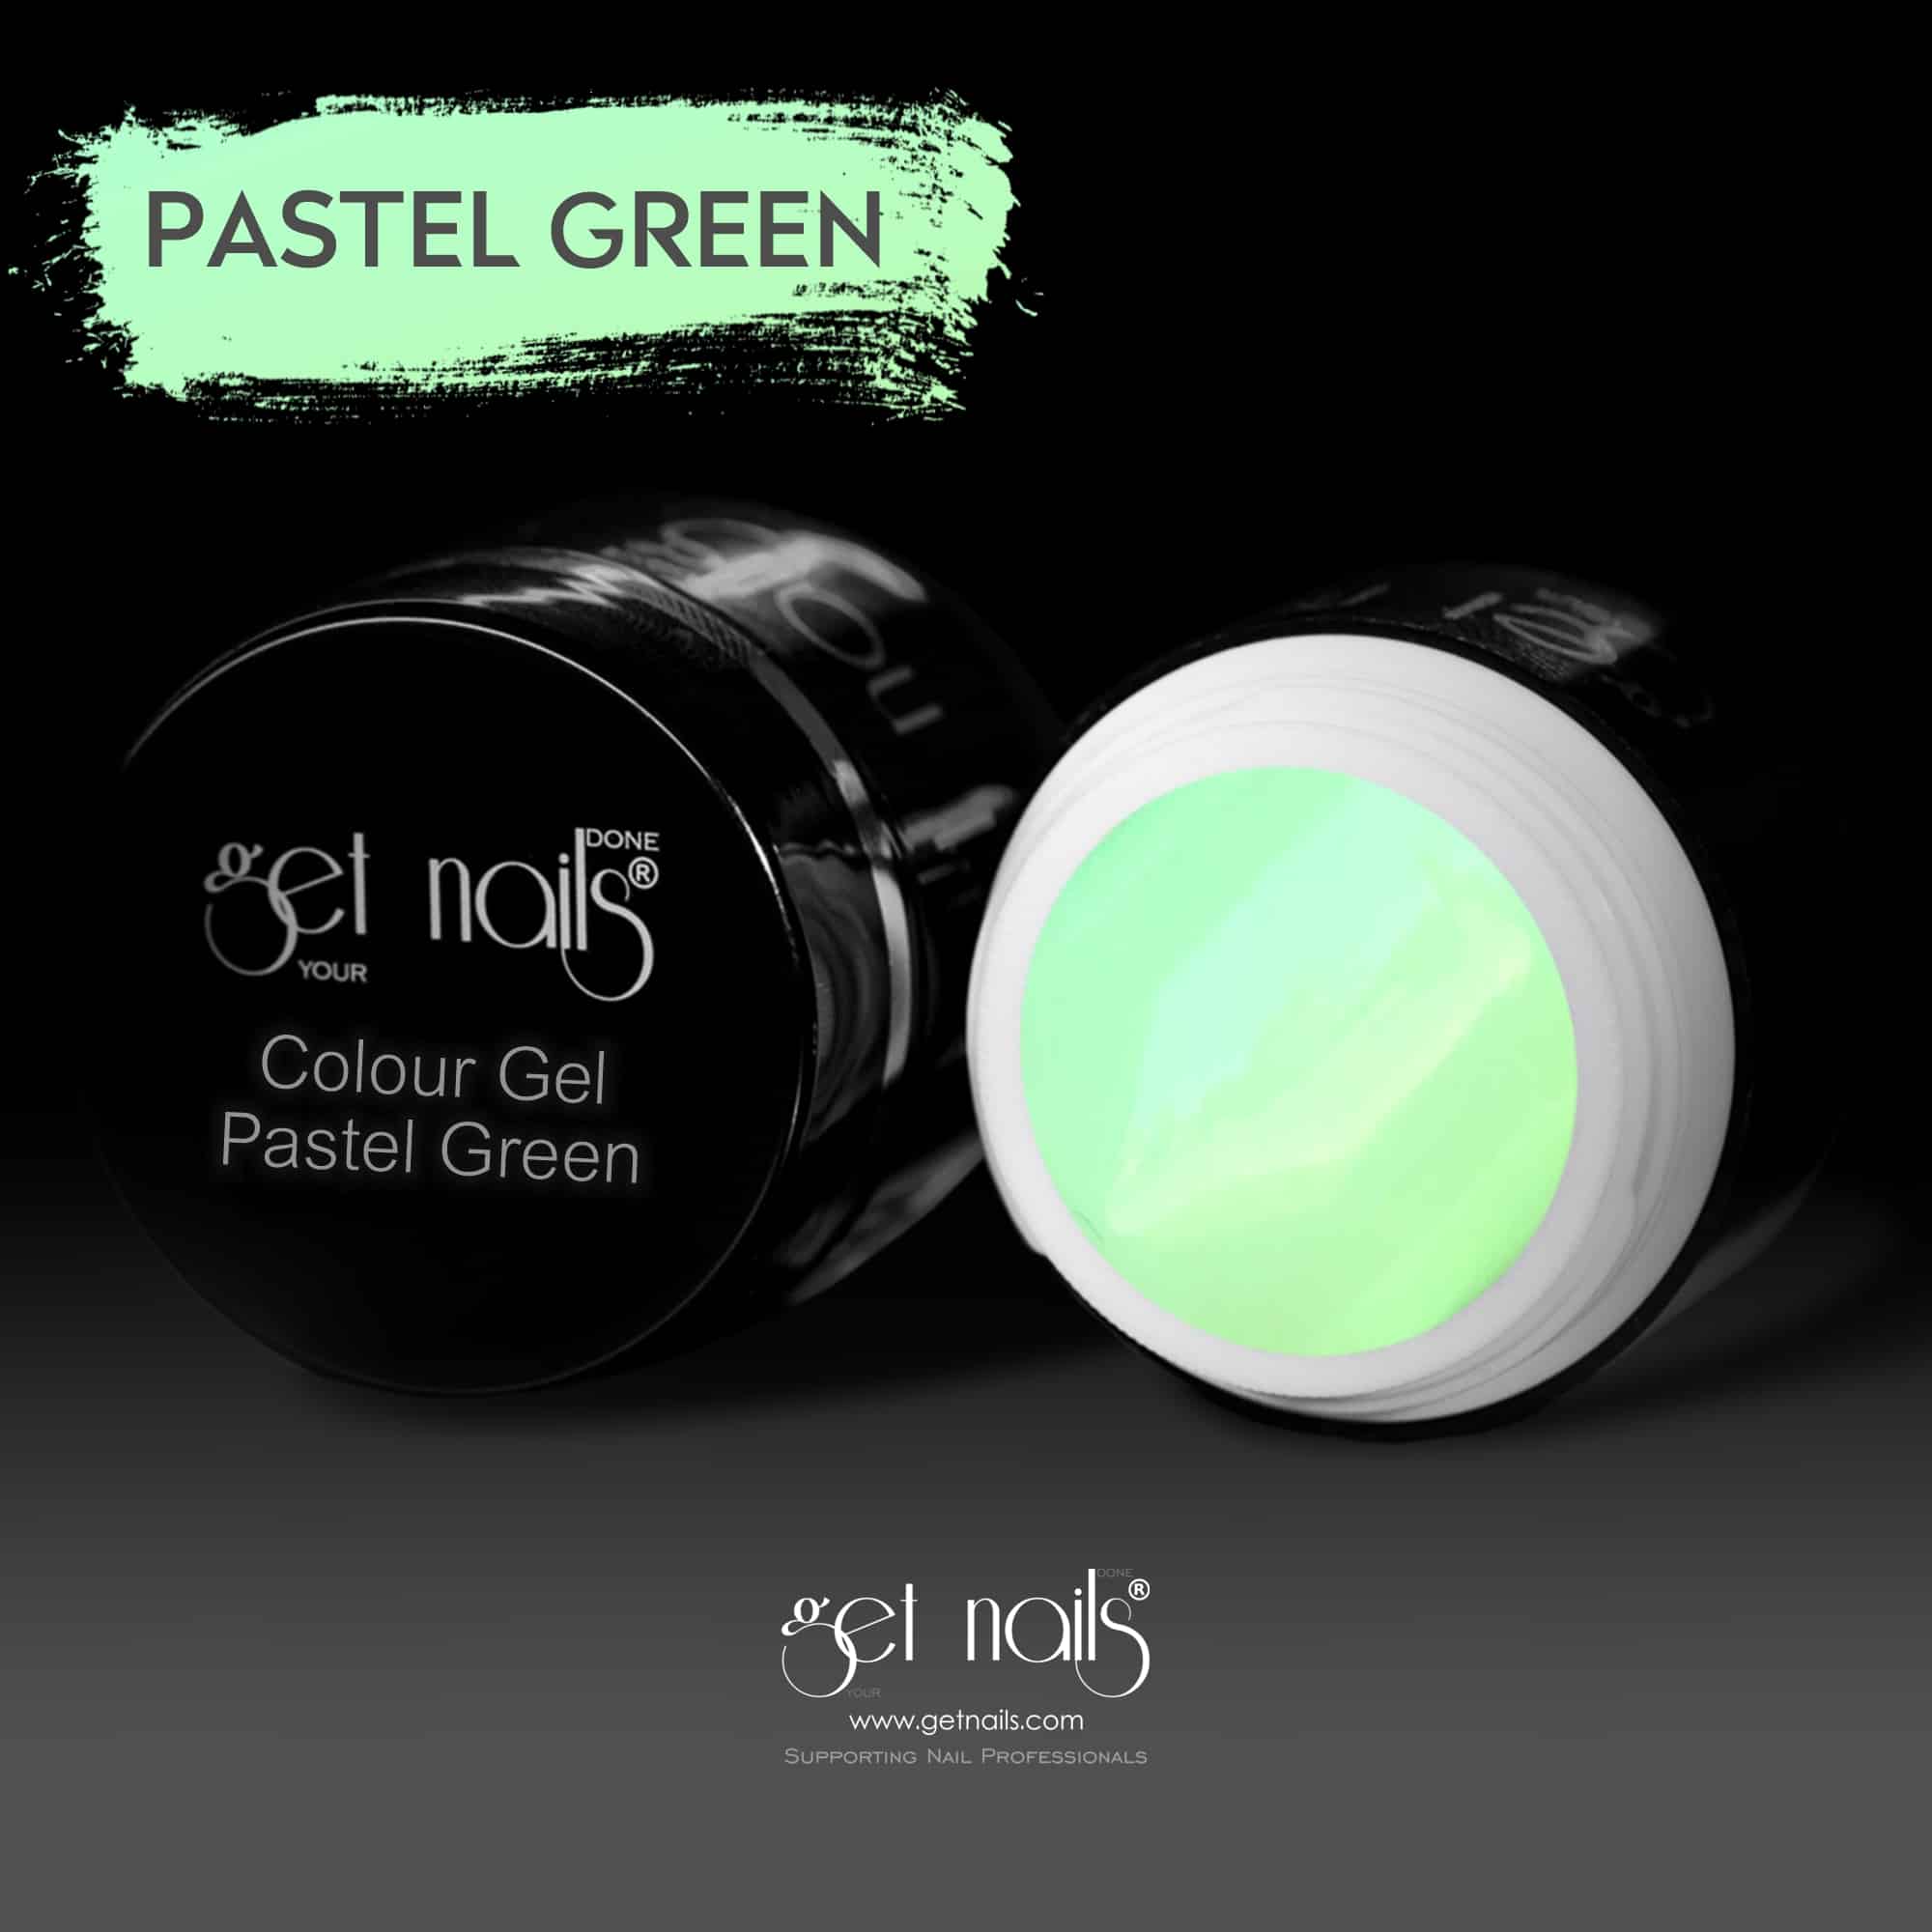 Get Nails Austria - Цветной гель Пастельный зеленый 5г